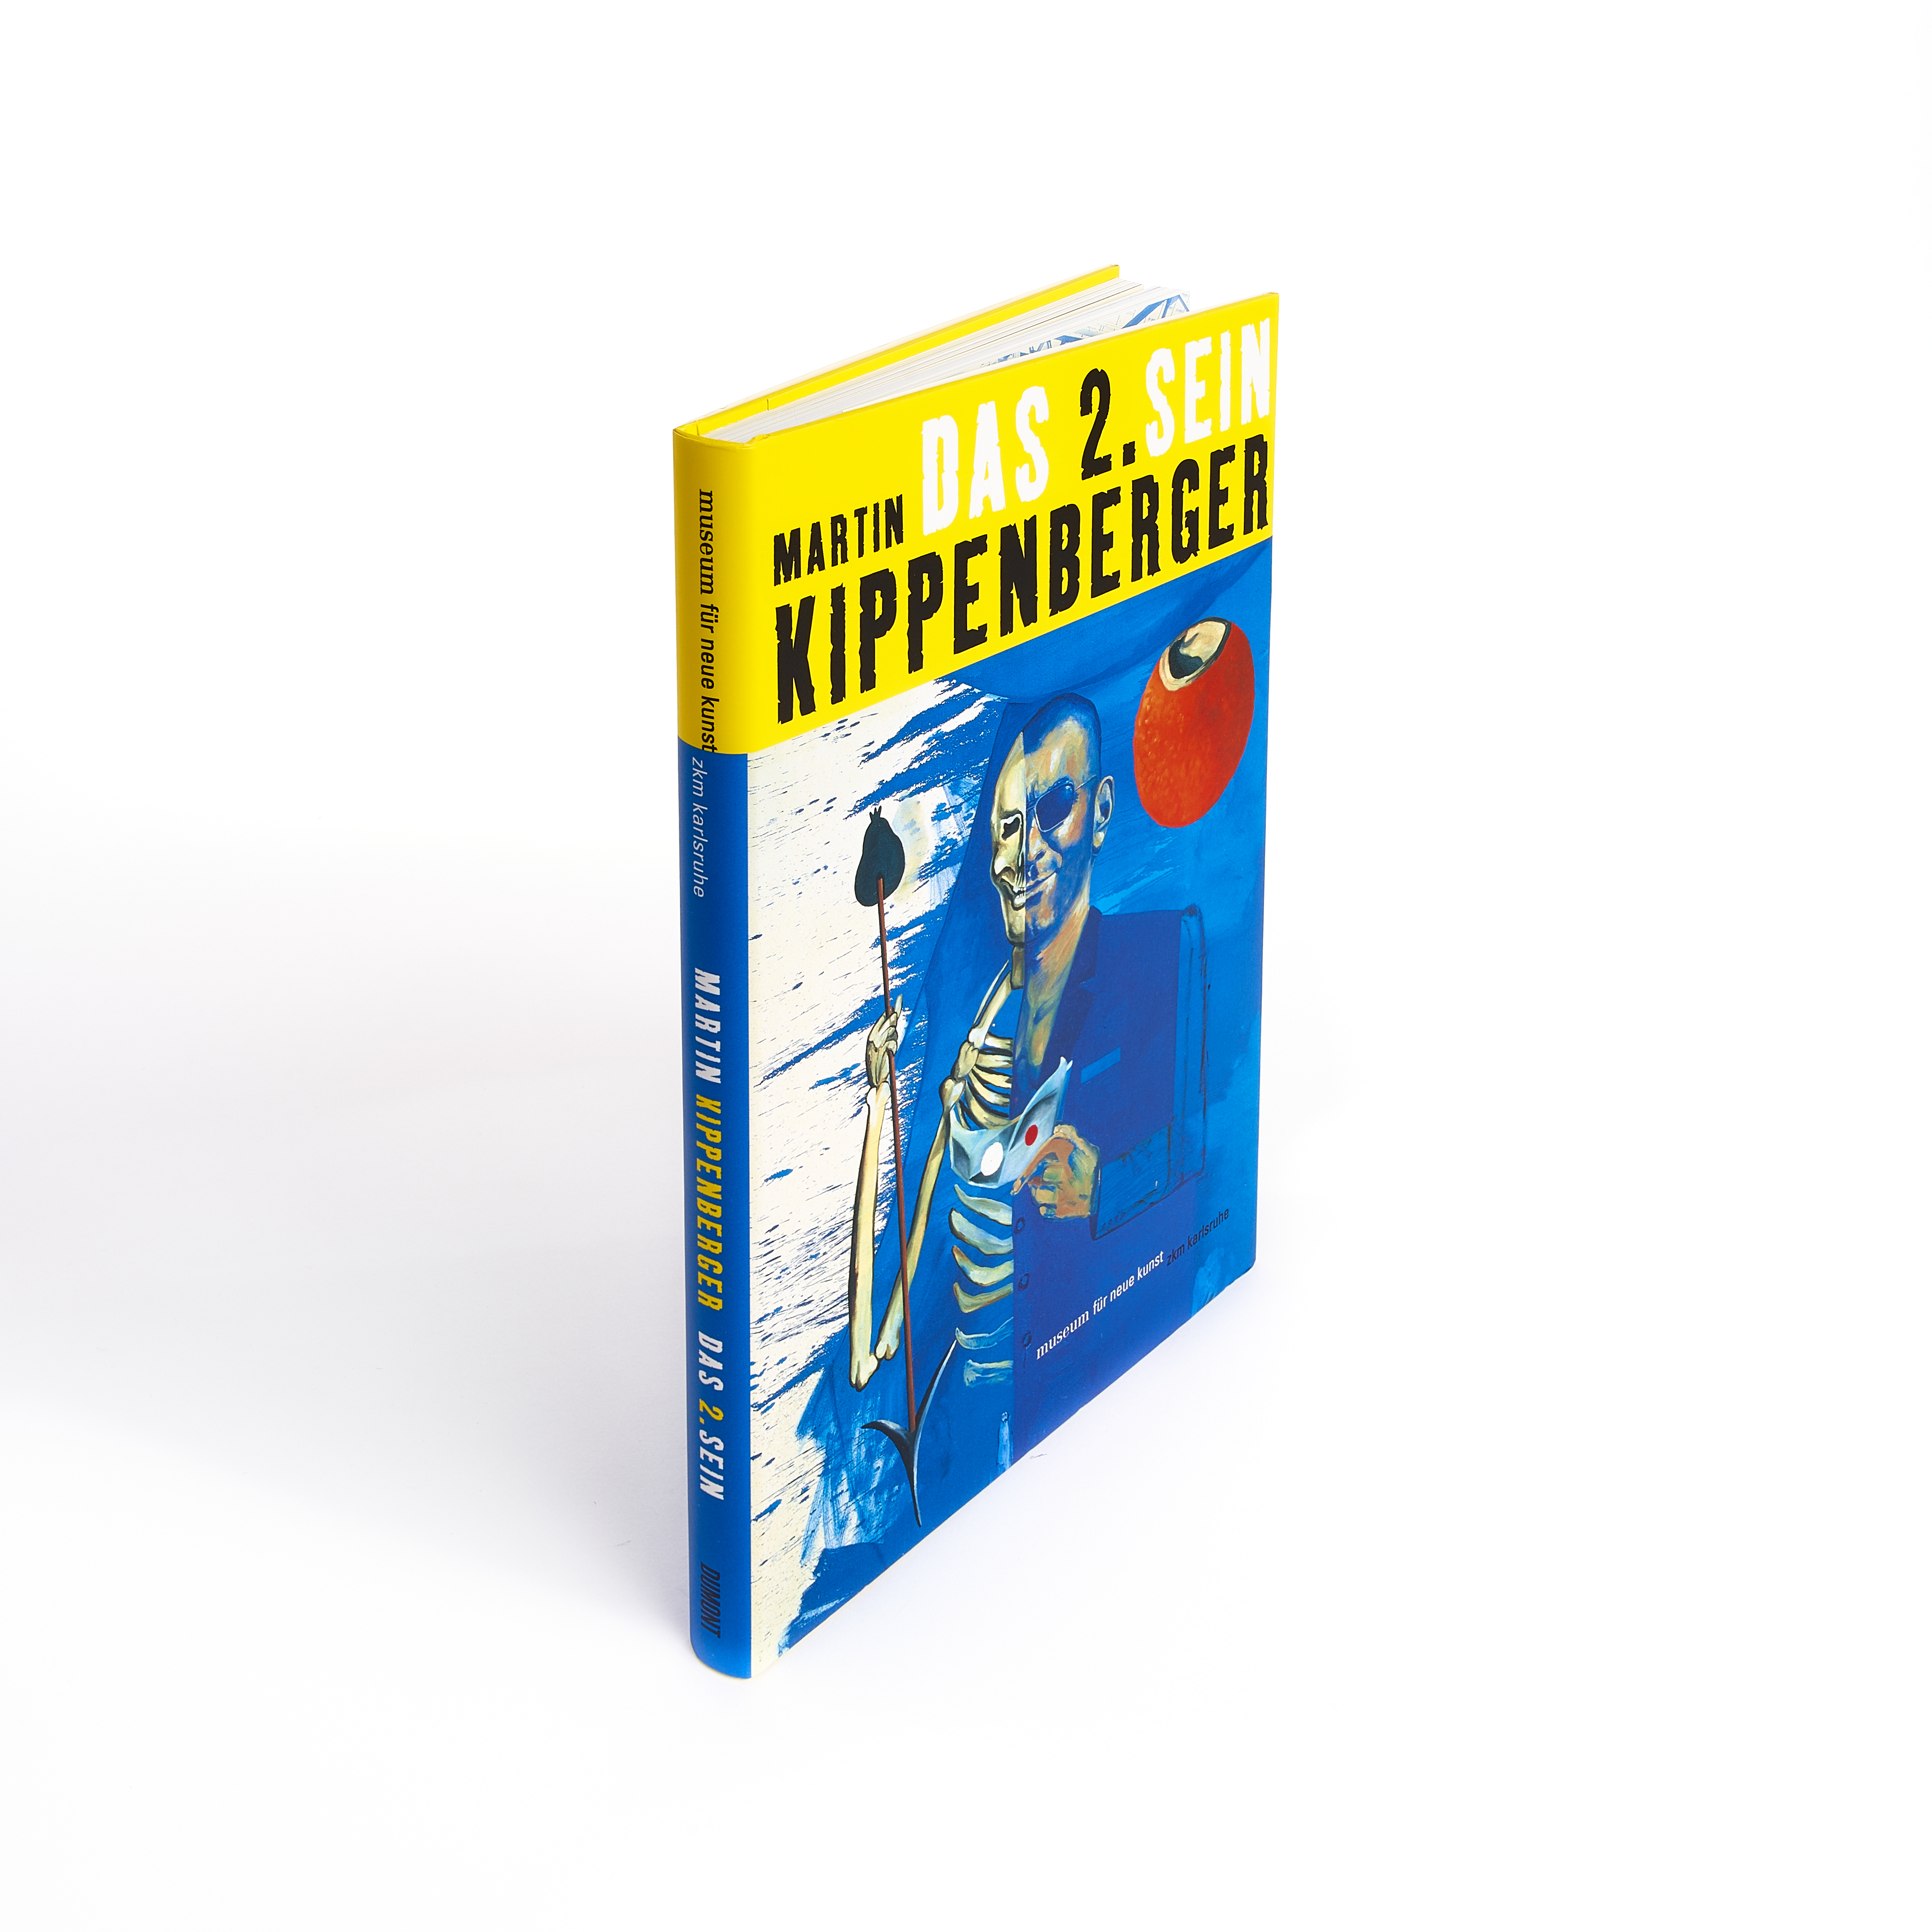 Martin Kippenberger: Das 2. Sein